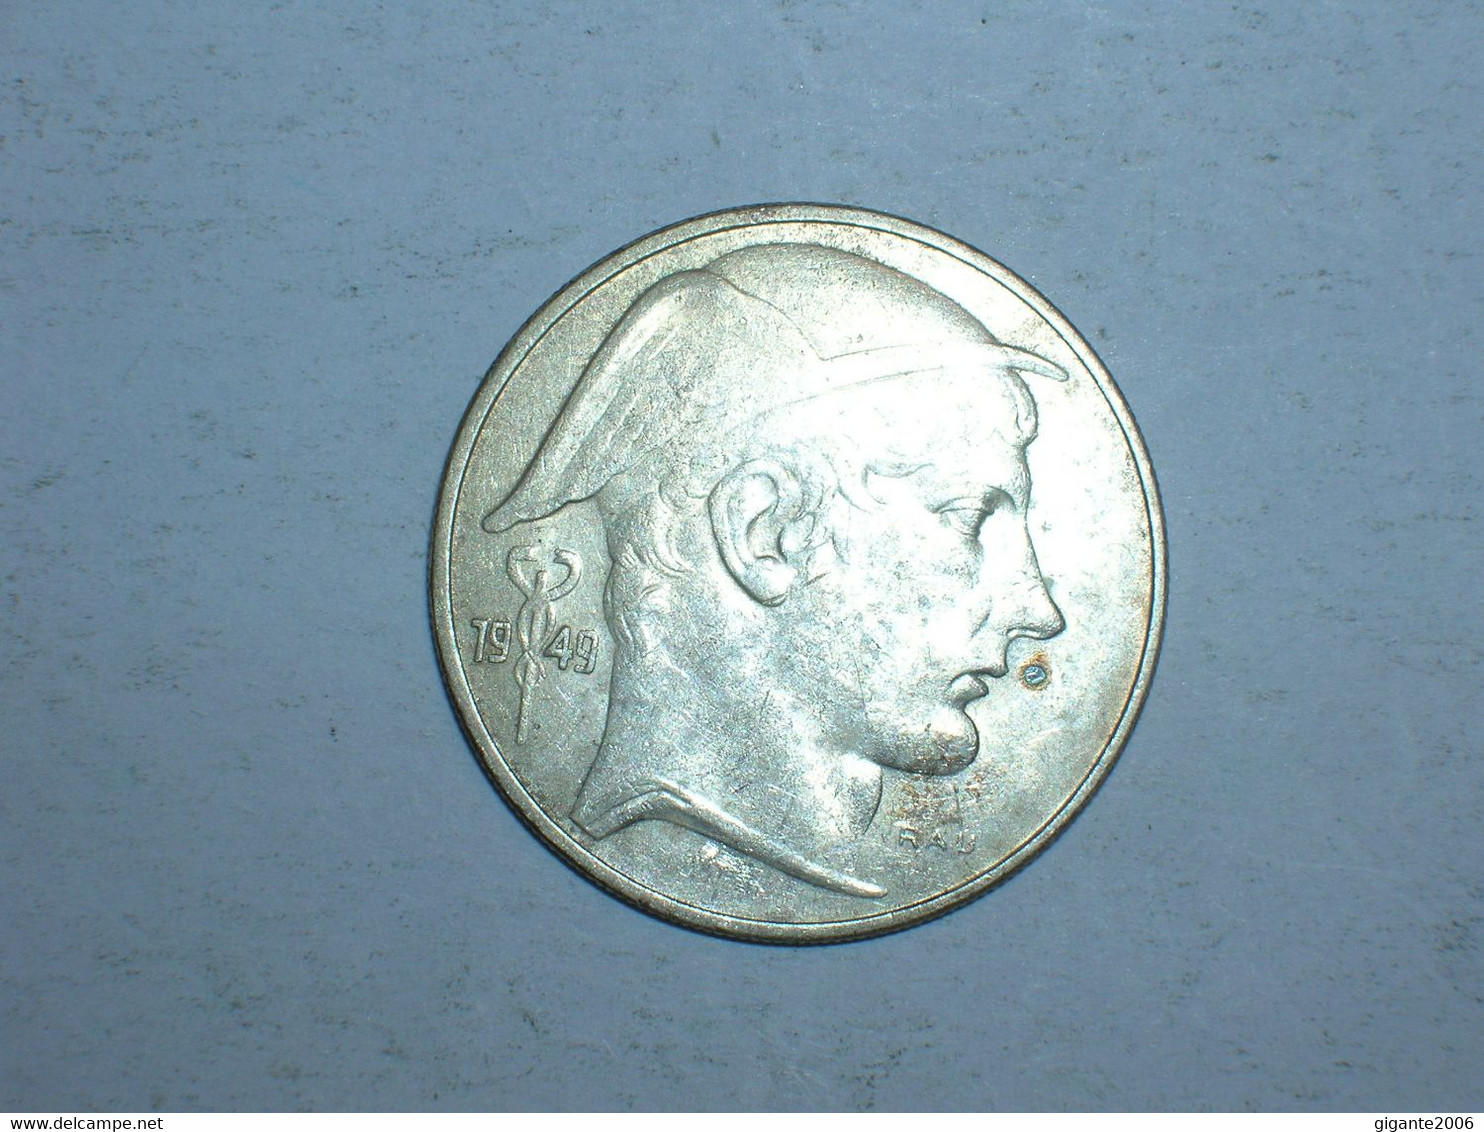 BELGICA 20 FRANCOS 1949 FR (9278) - 20 Francs